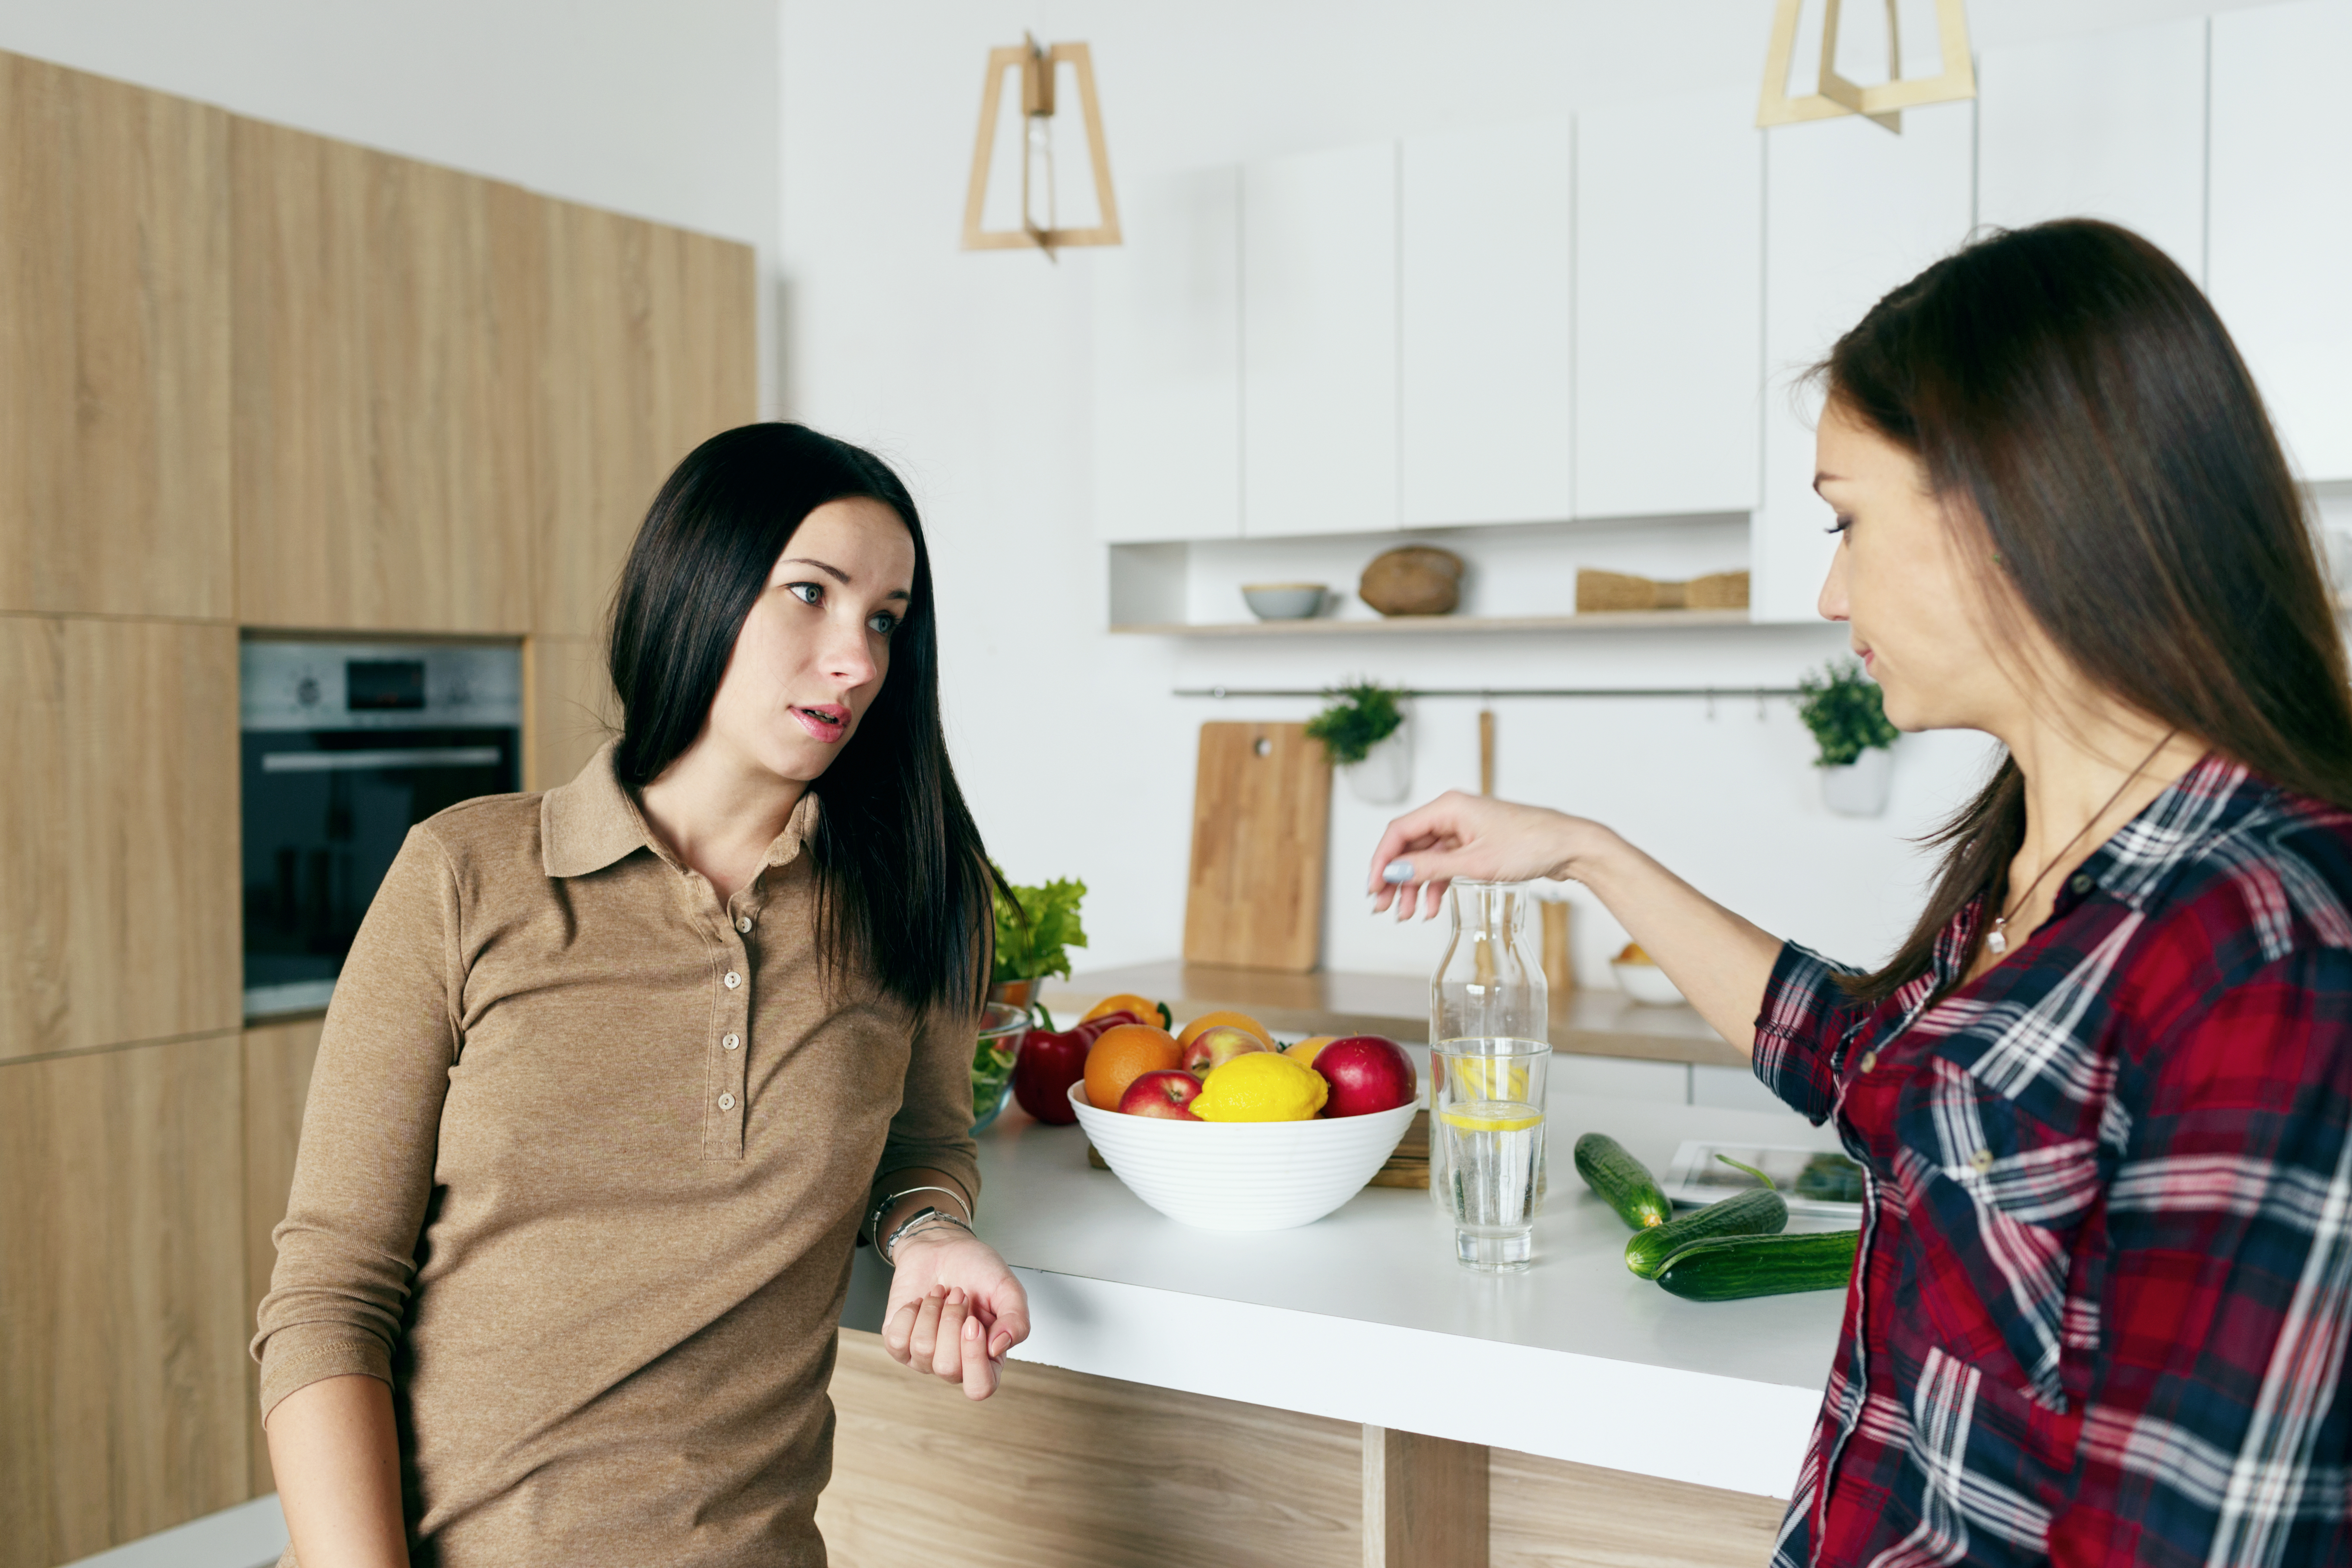 Two women talking in the kitchen | Source: Shutterstock